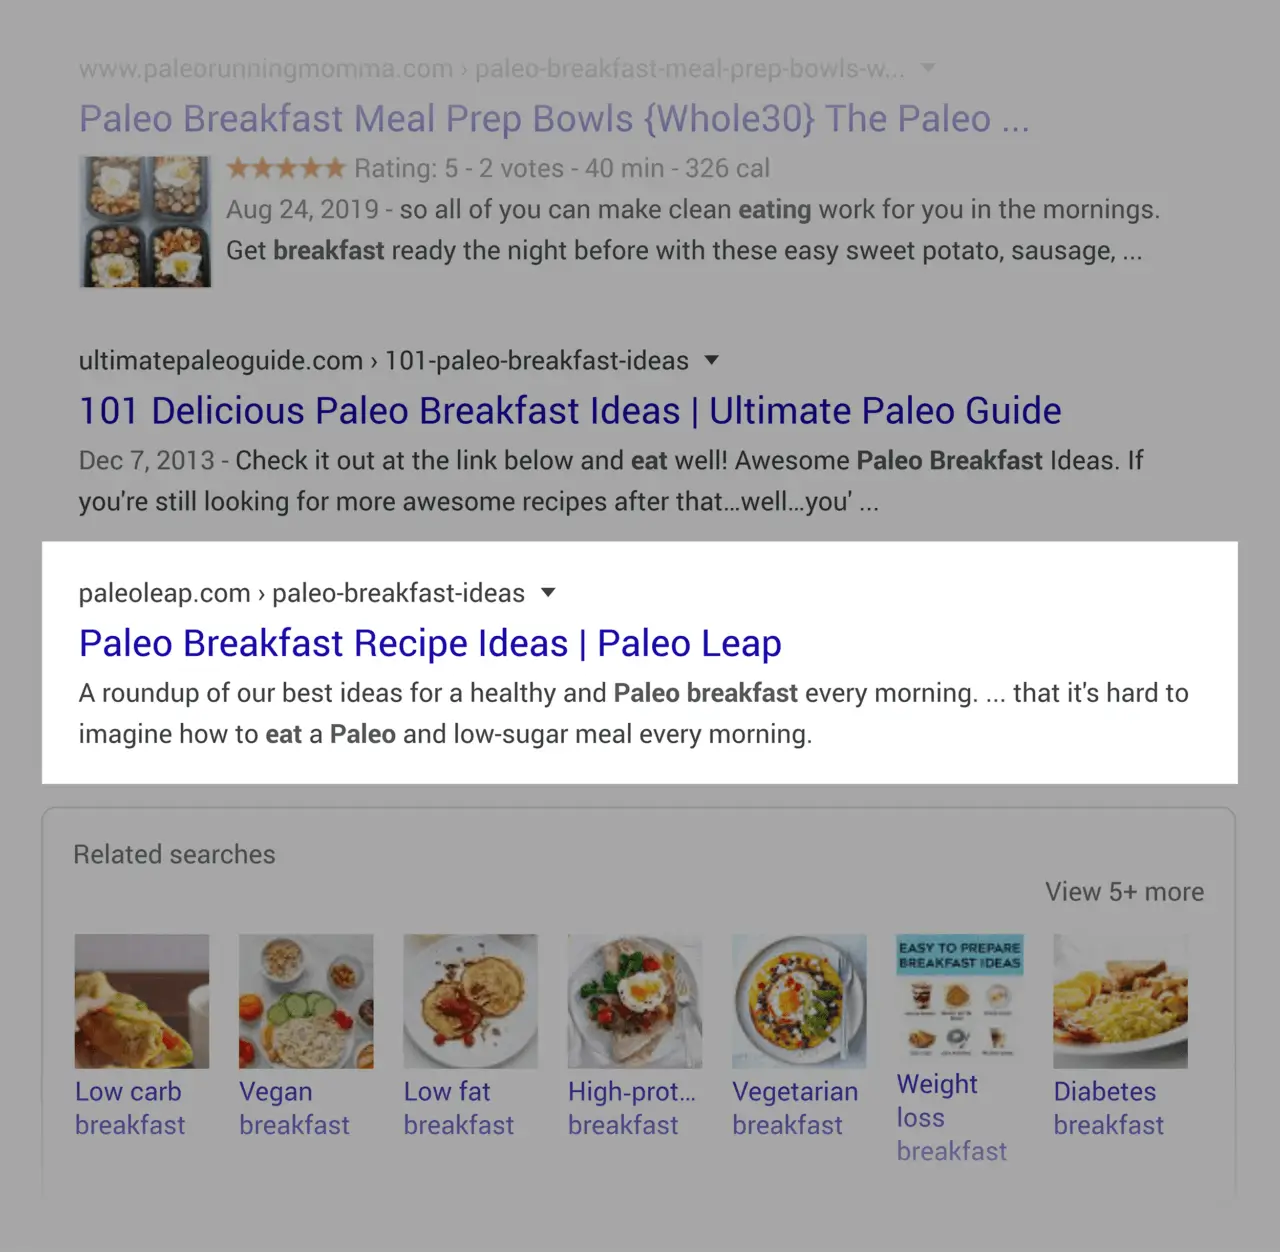 Tuy nhiên, với tìm kiếm "Paleo diet breakfasts", trang này chỉ đứng ở vị trí thứ 9.